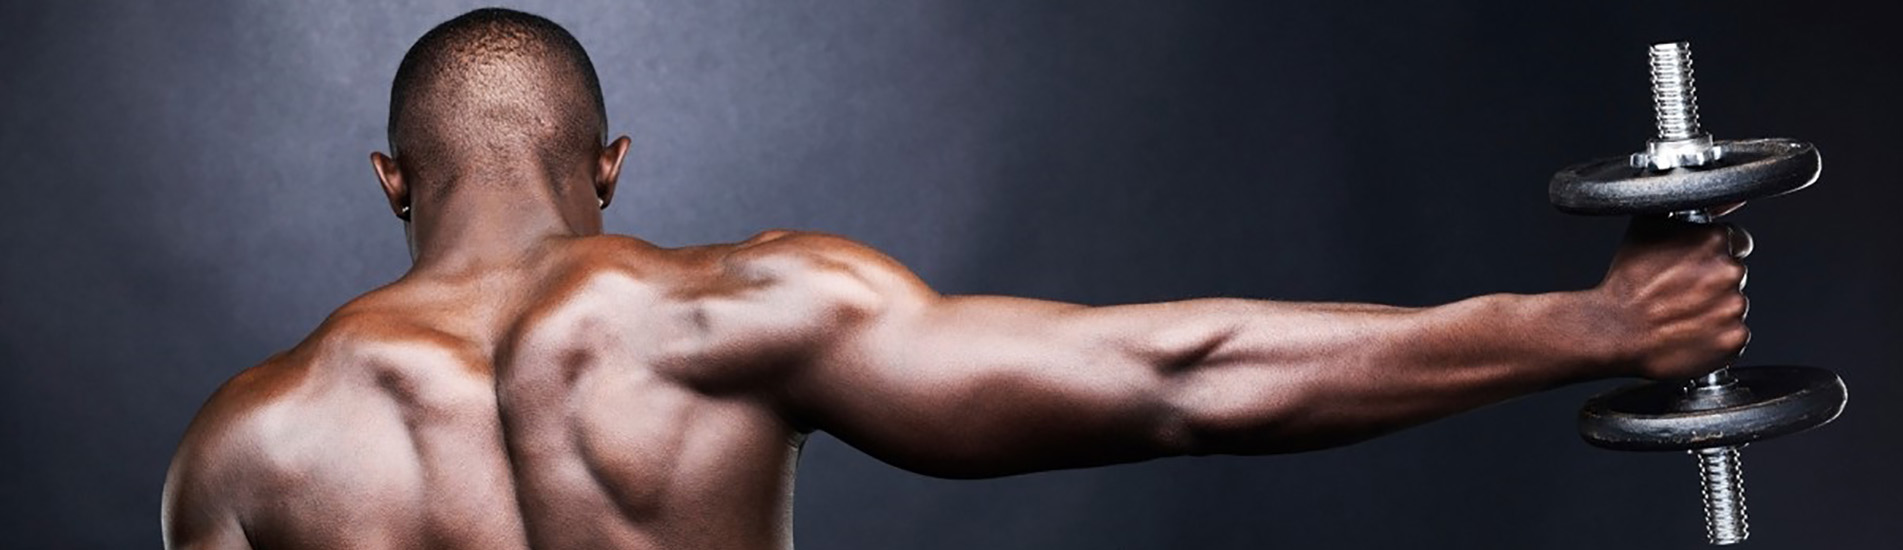 steroide prise de muscle Resources: google.com